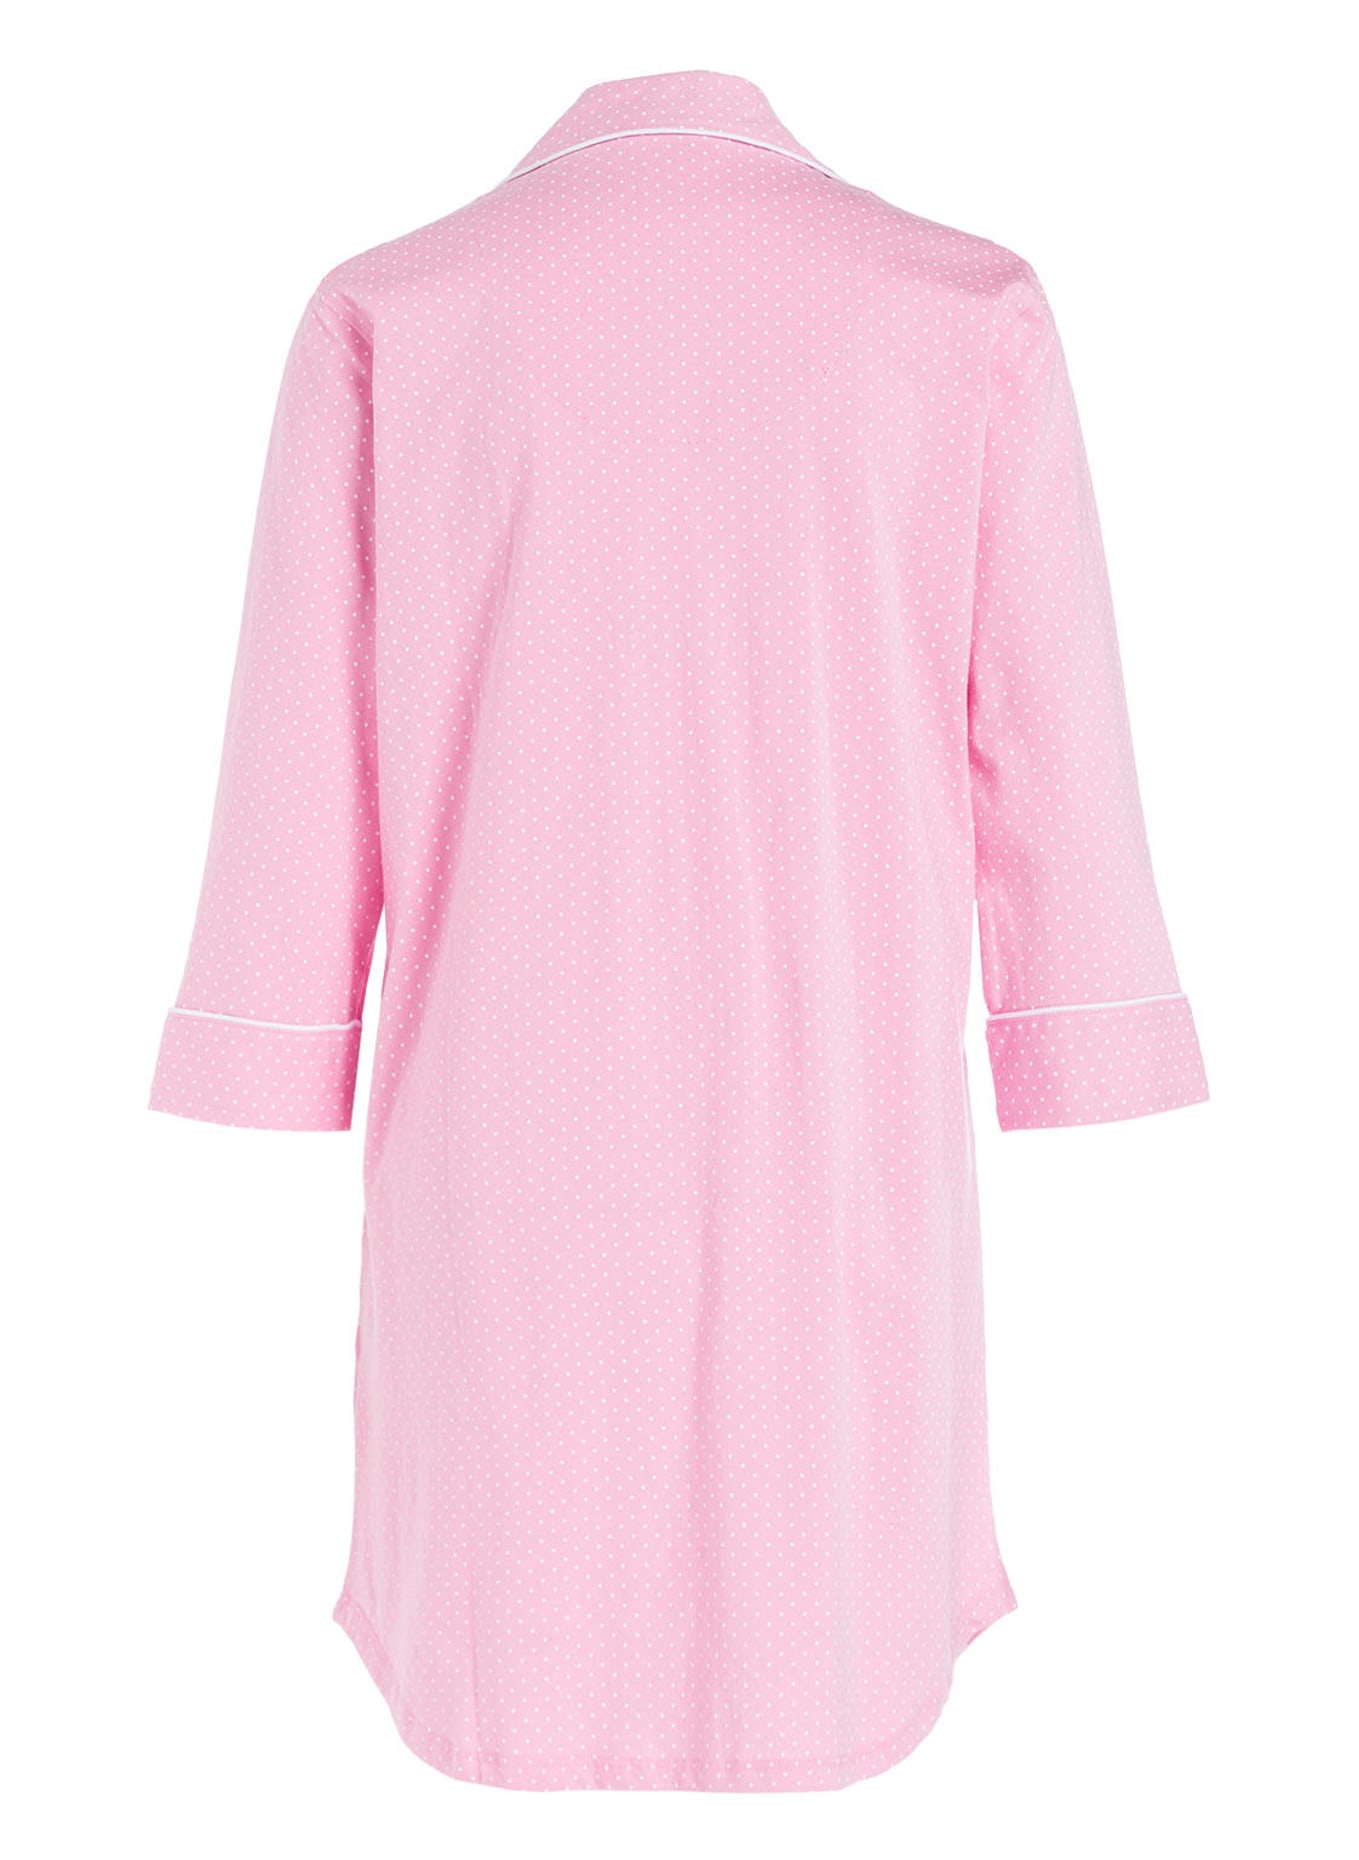 LAUREN RALPH LAUREN Nightgown with 3/4 sleeves, Color: PINK (Image 2)